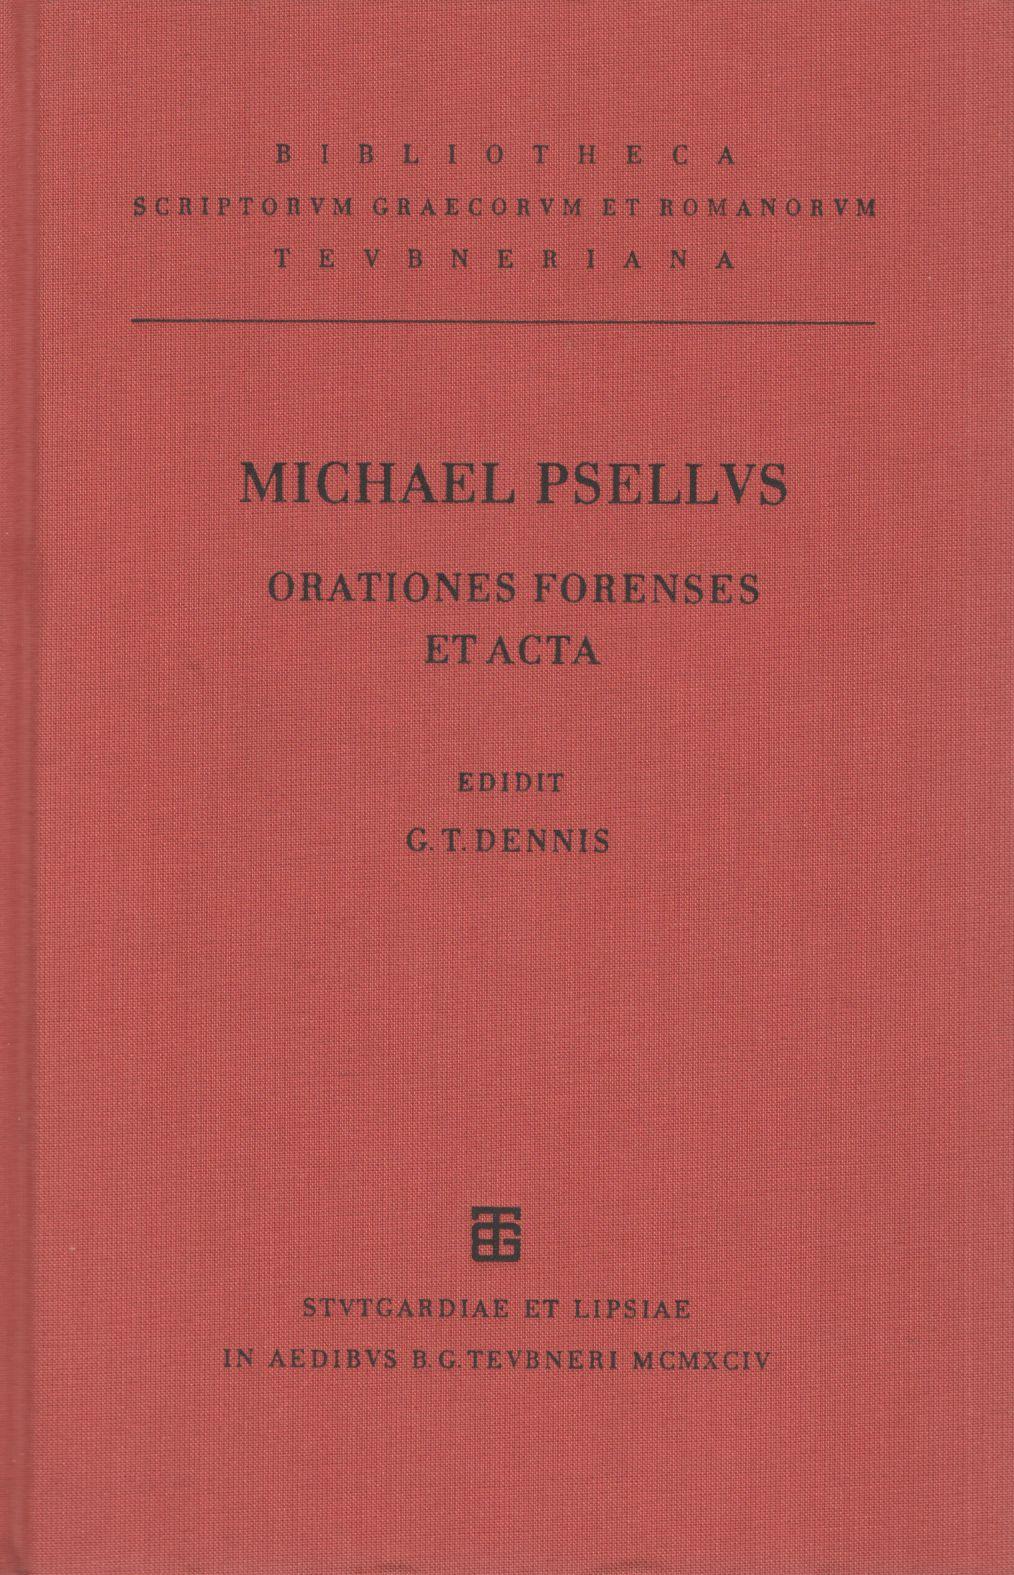 MICHAELIS PSELLI ORATIONES FORENSES ET ACTA